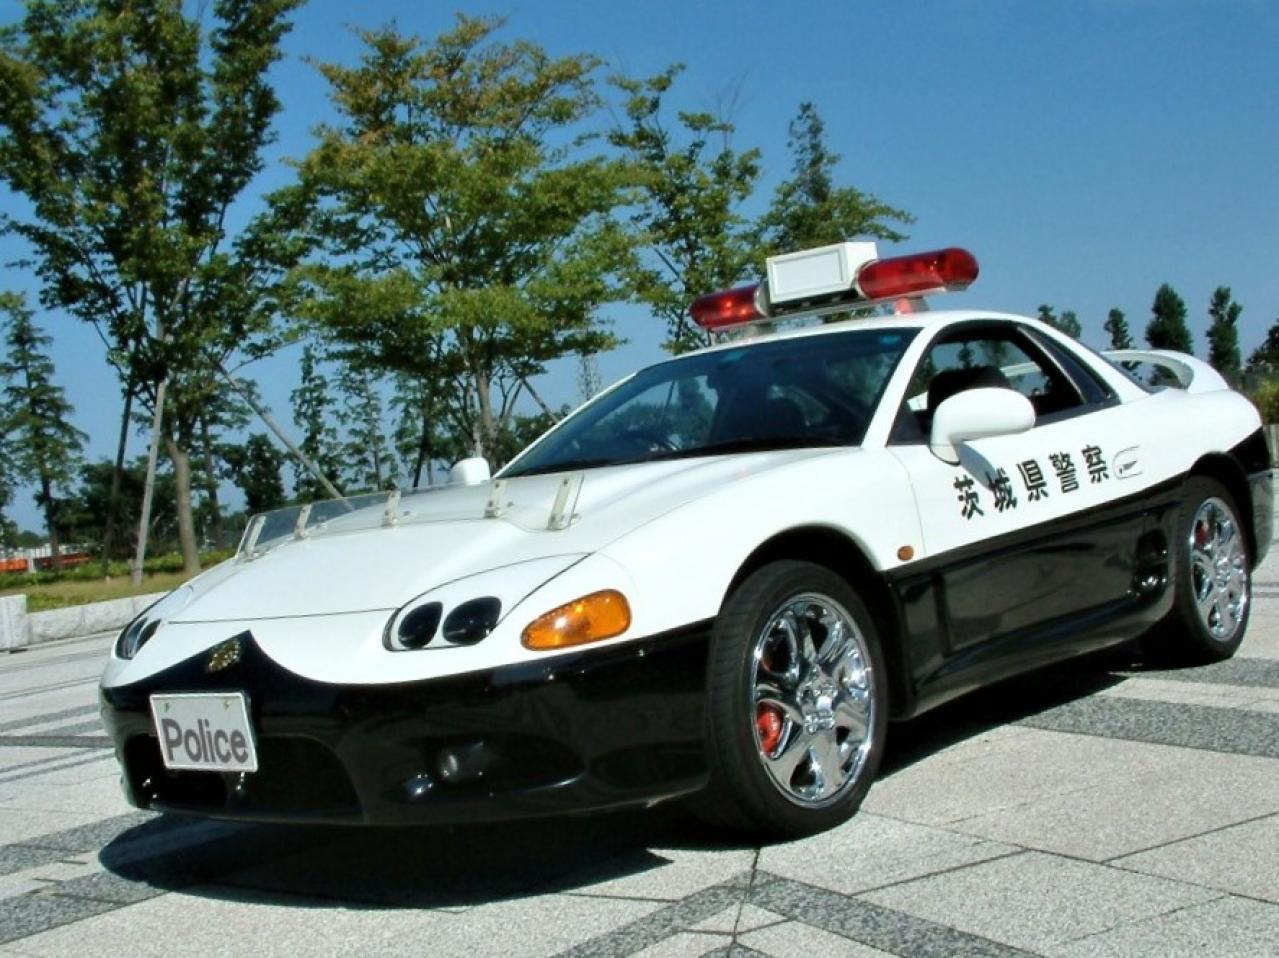 ちょっとイケてる茨城県警のホームページに三菱gtoパトカーの 壁紙 を発見 しかもレーダー パトカー仕様 交通取締情報 Motor Fan モーターファン